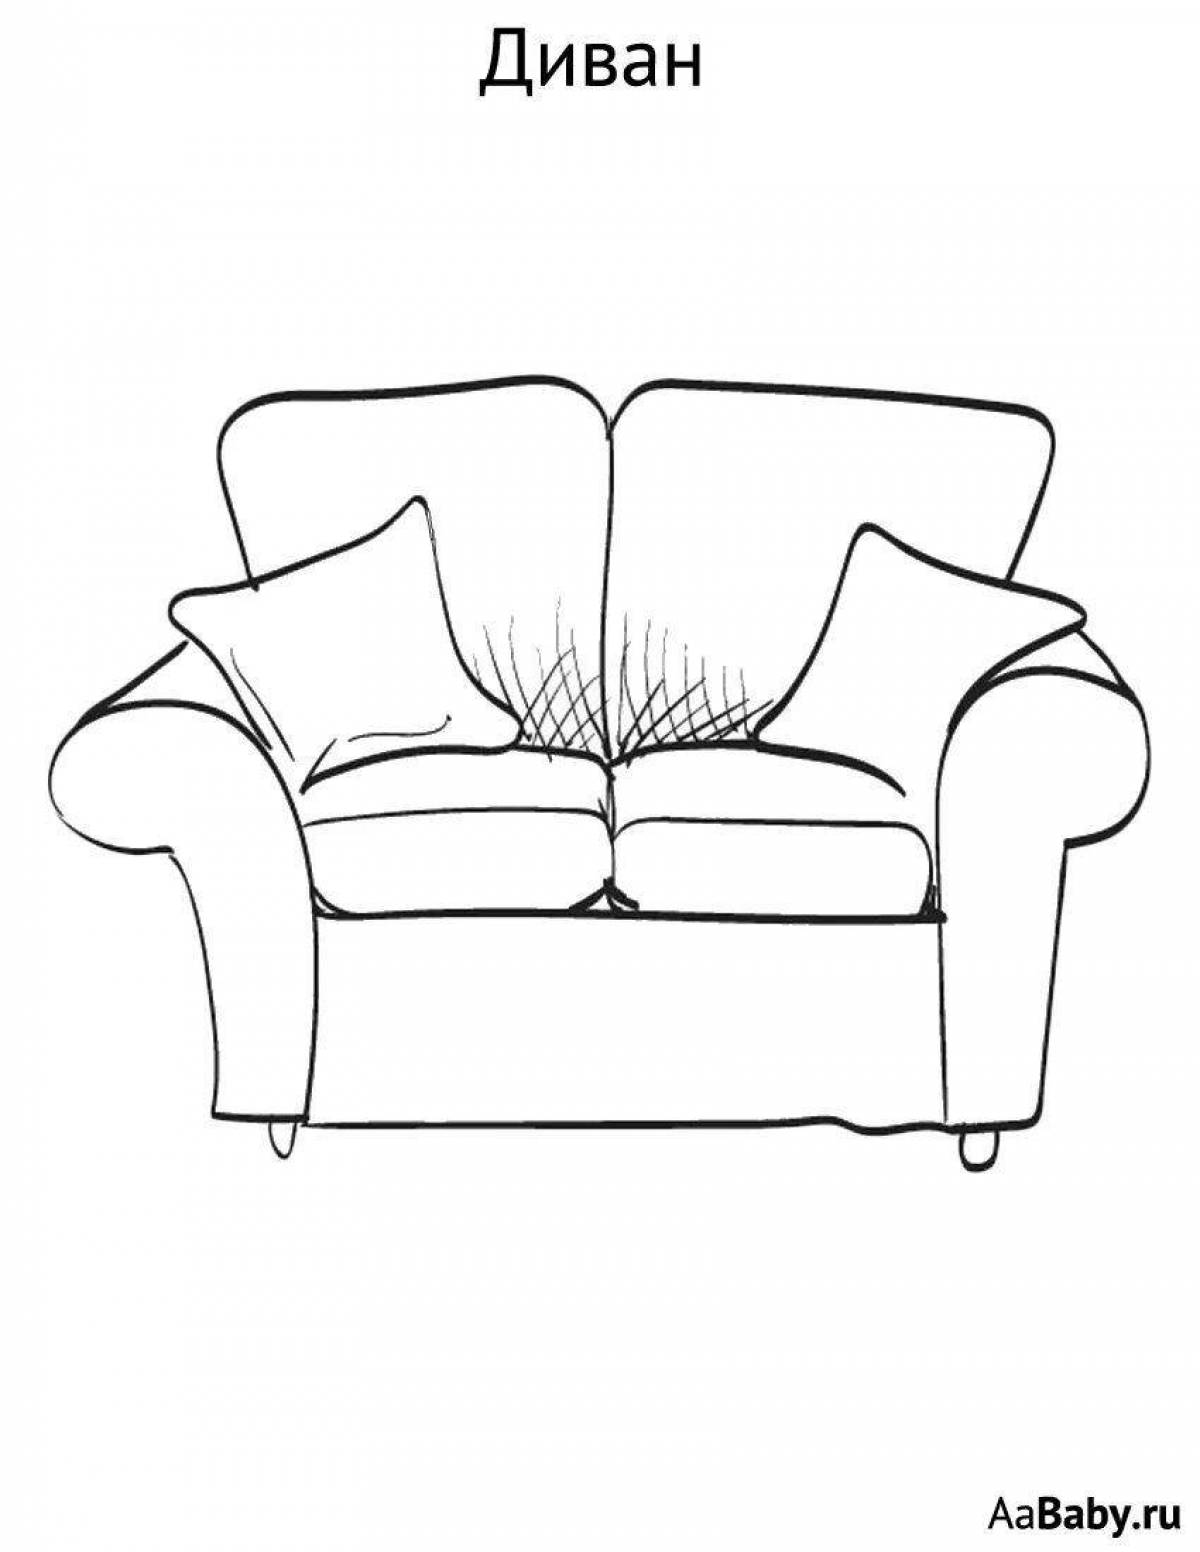 Милый диван-раскраска для детей 3-4 лет